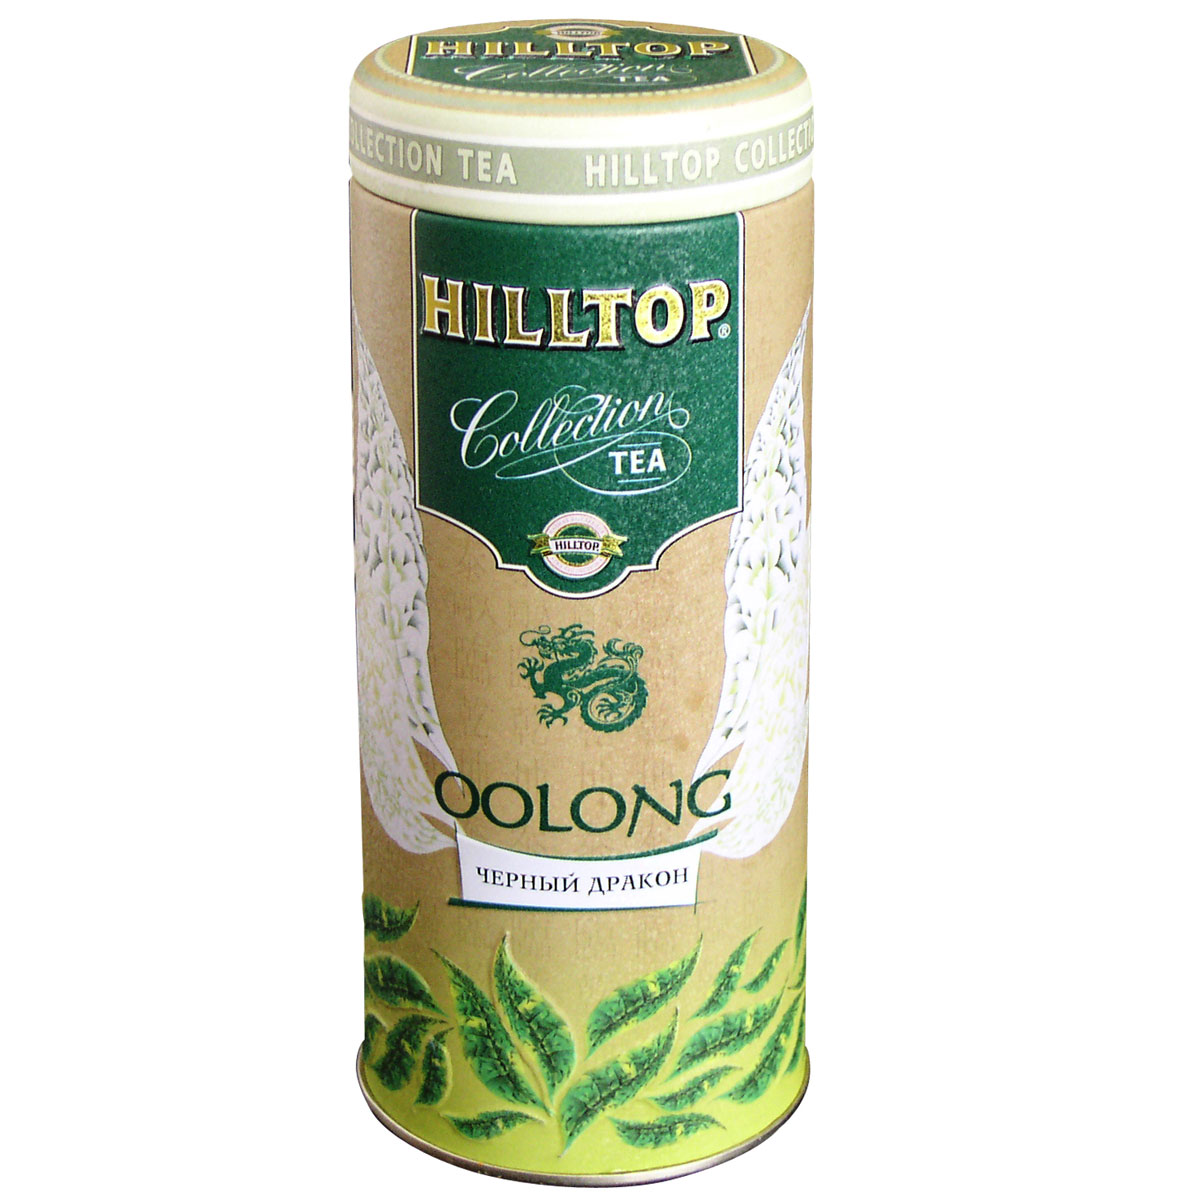 Hilltop Oolong красный листовой чай, 100 г